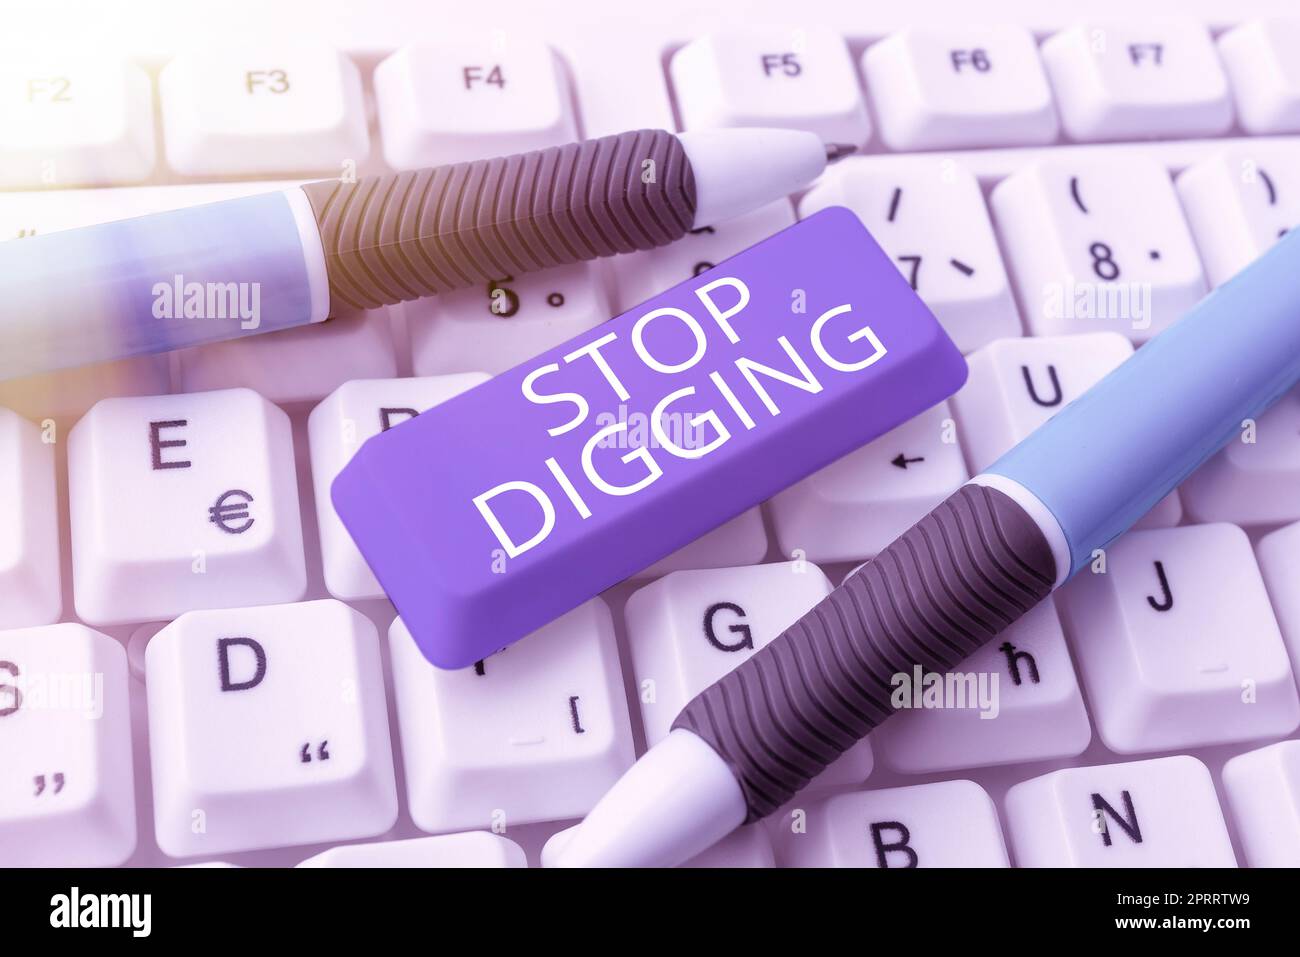 Affiche Stop Digging. Concept signifiant empêcher l'excavation illégale carrière Environnement conservation Banque D'Images